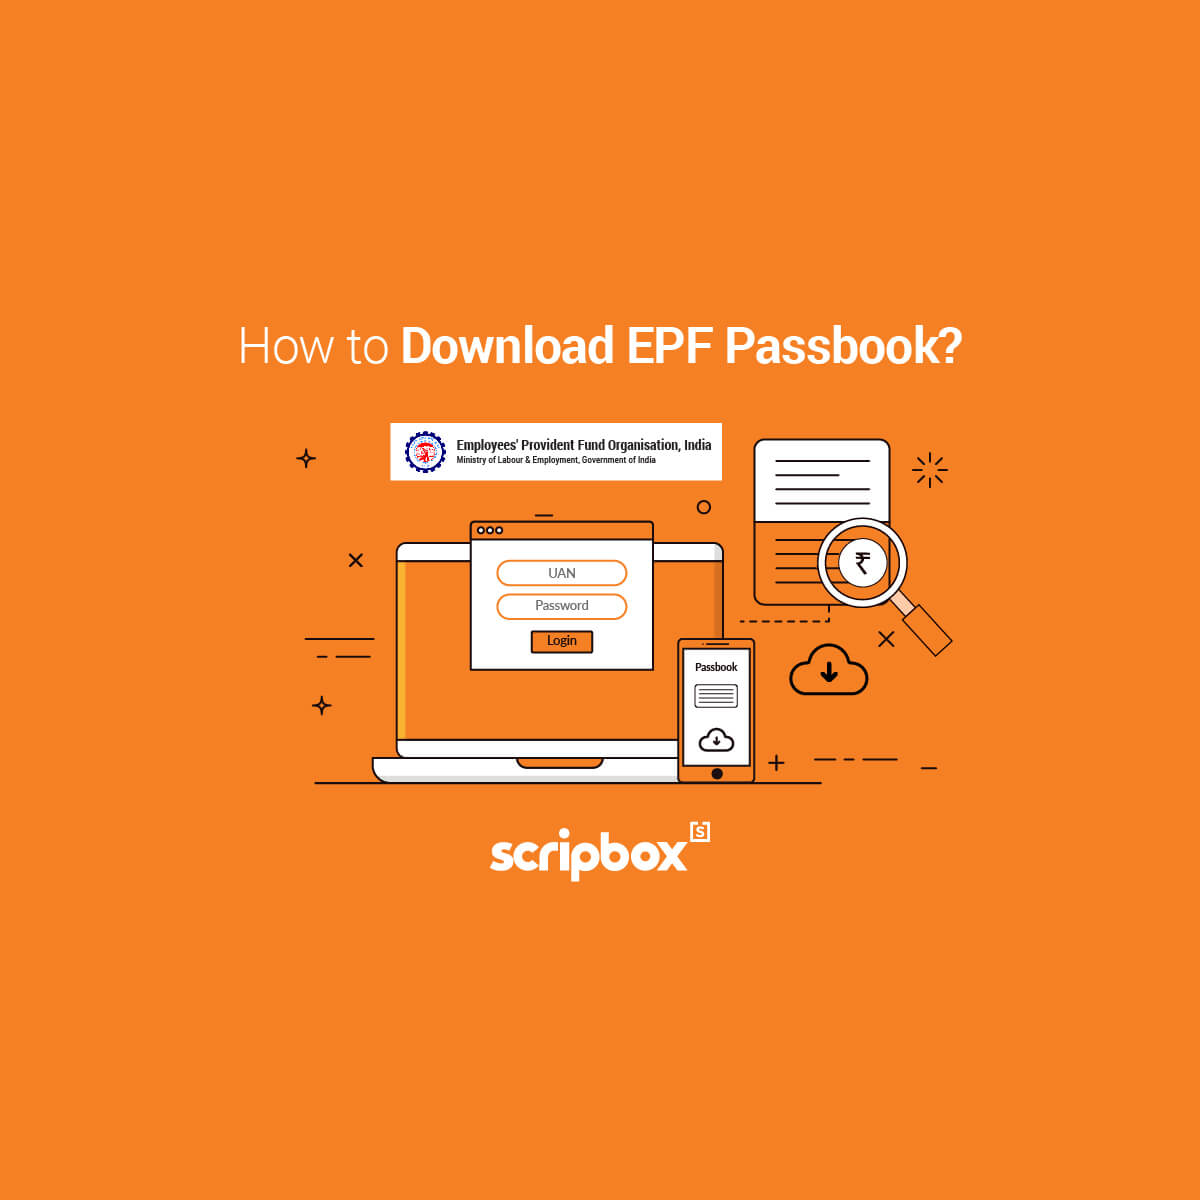 EPF Passbook - How to Download EPFO Passbook Online?